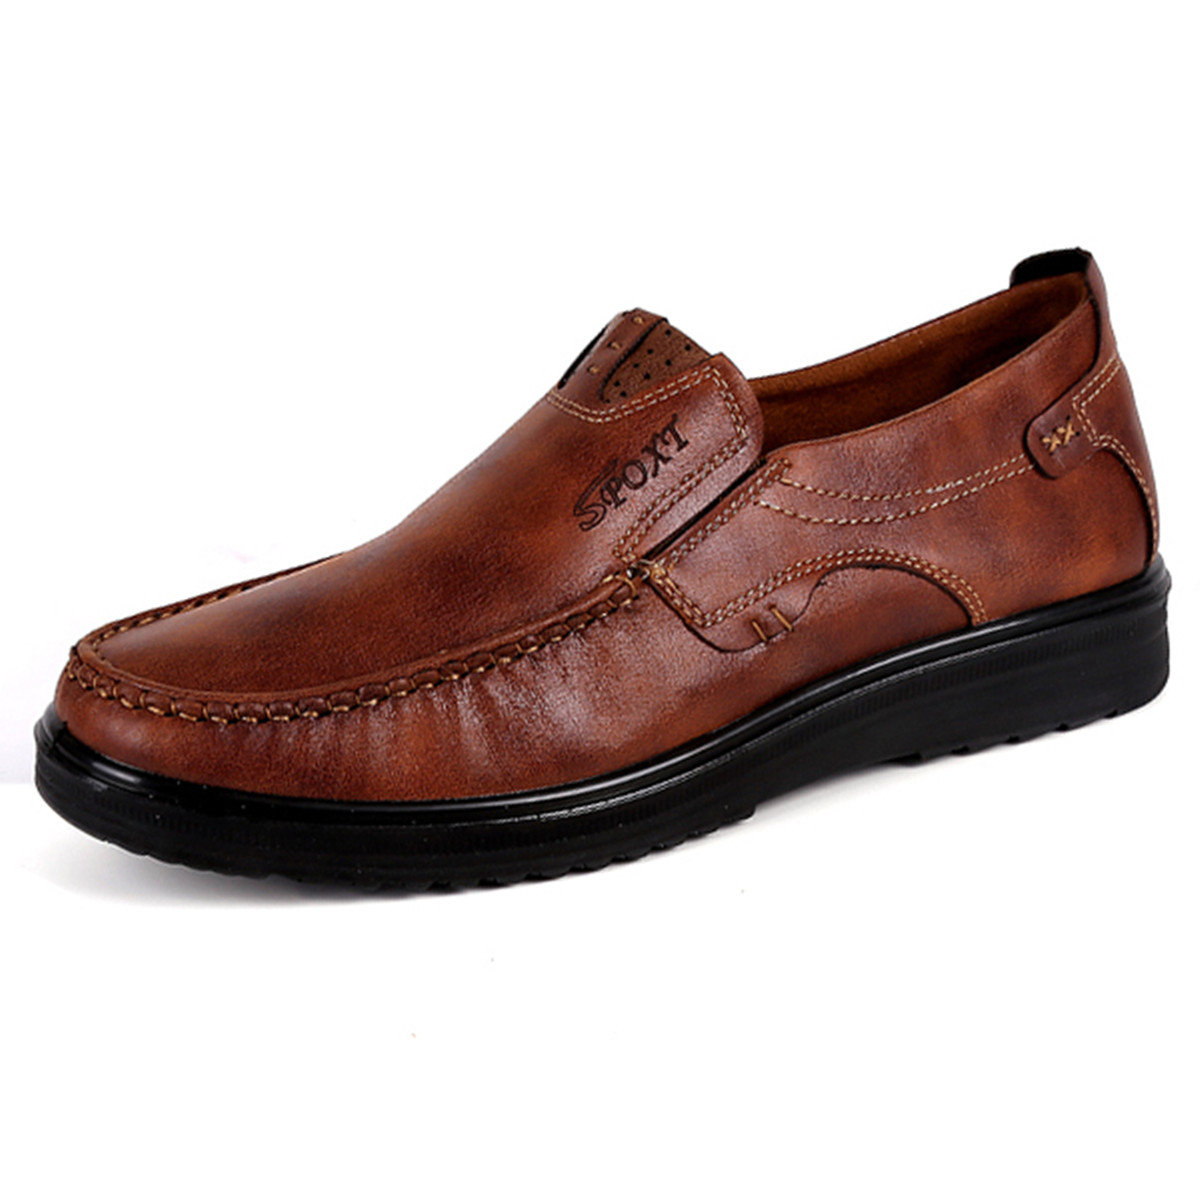 

Menico Men Large Size Soft Sole Casual Shoes, Black brown khaki